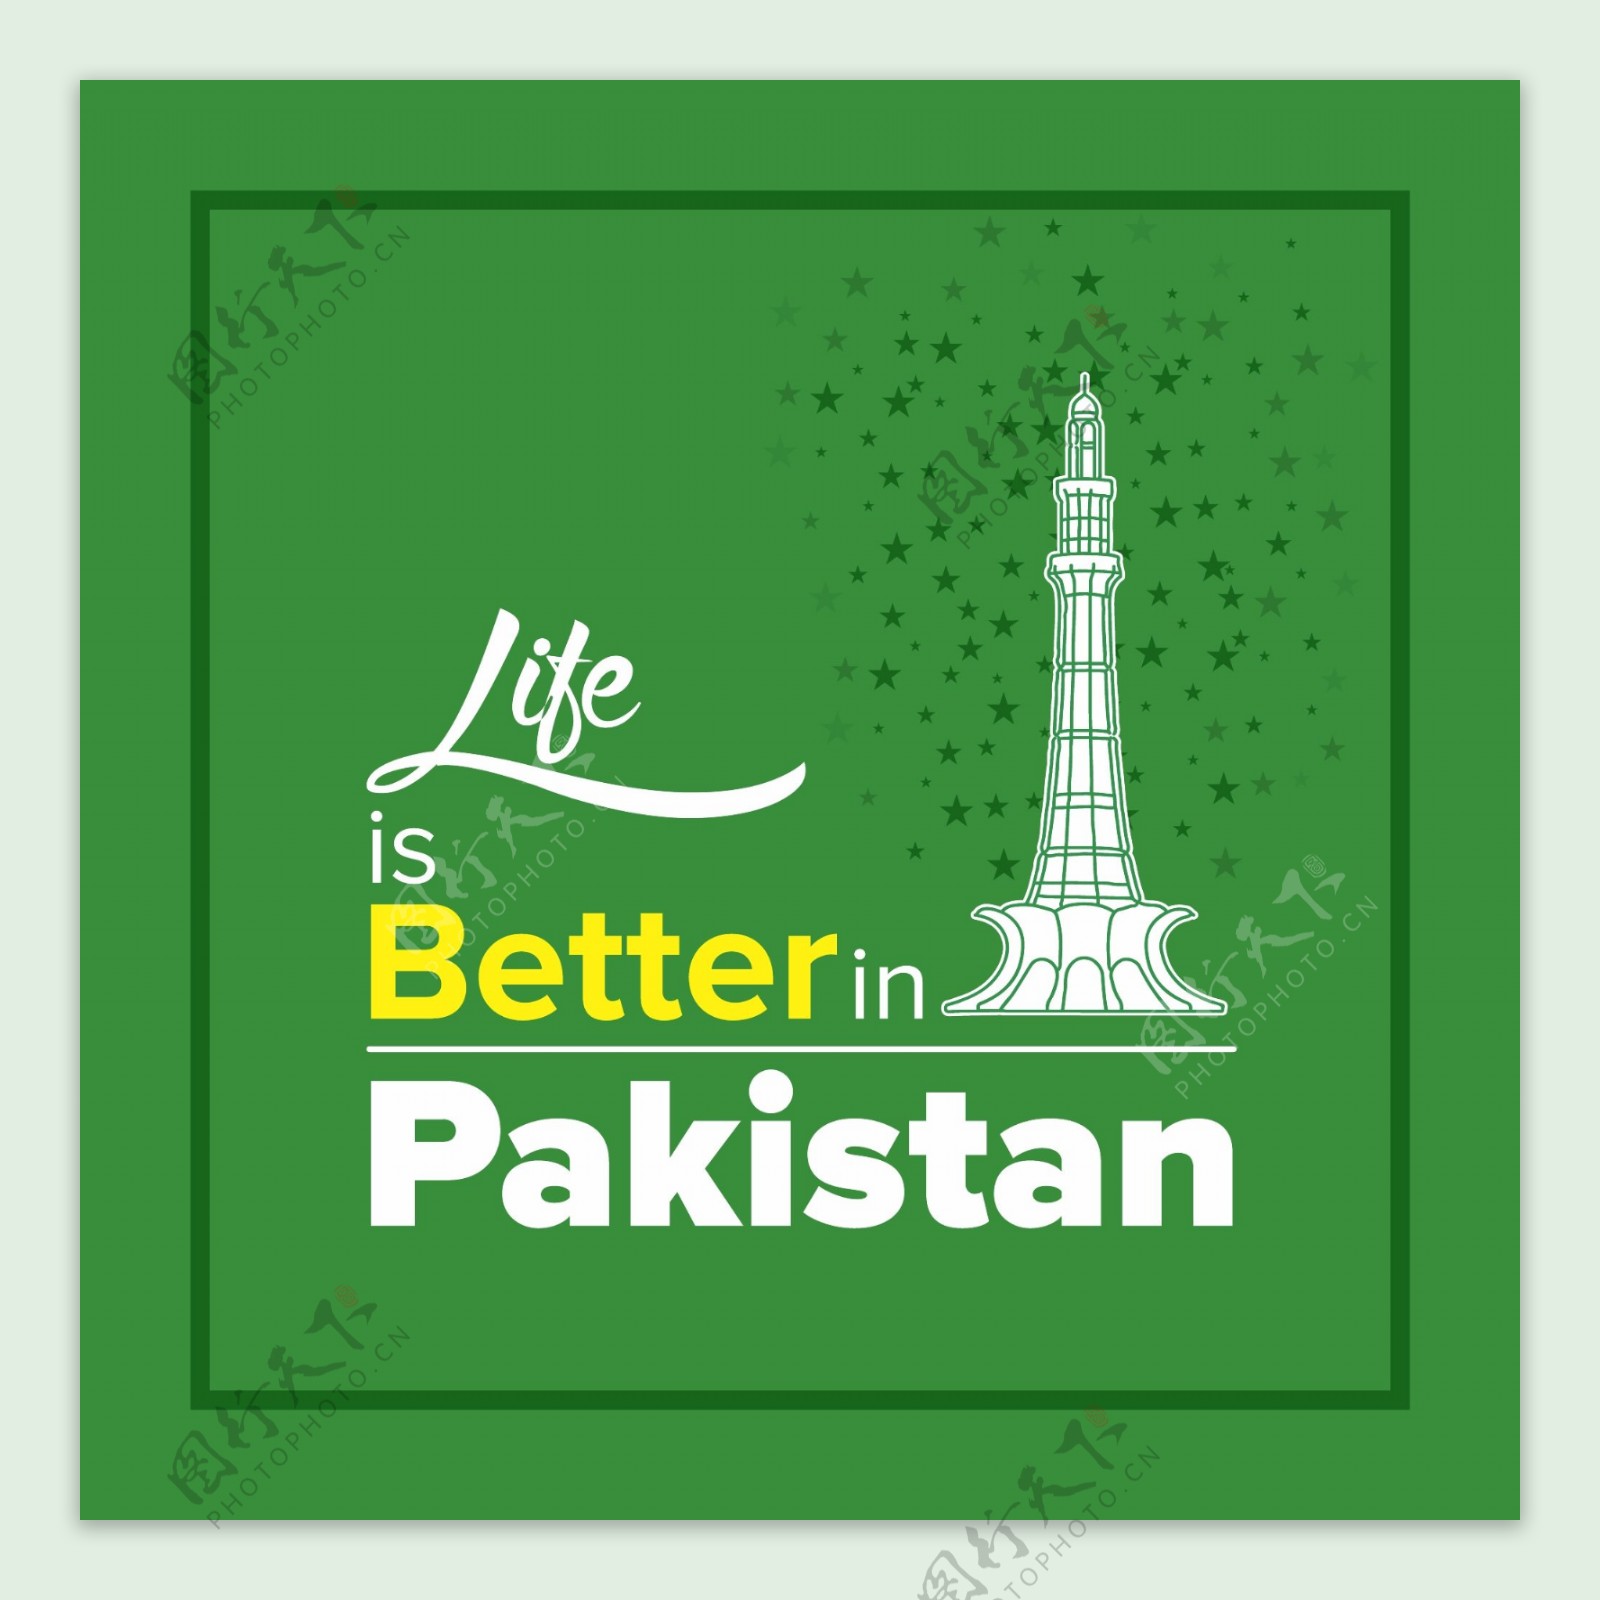 巴基斯坦天的绿色背景鼓舞人心的报价